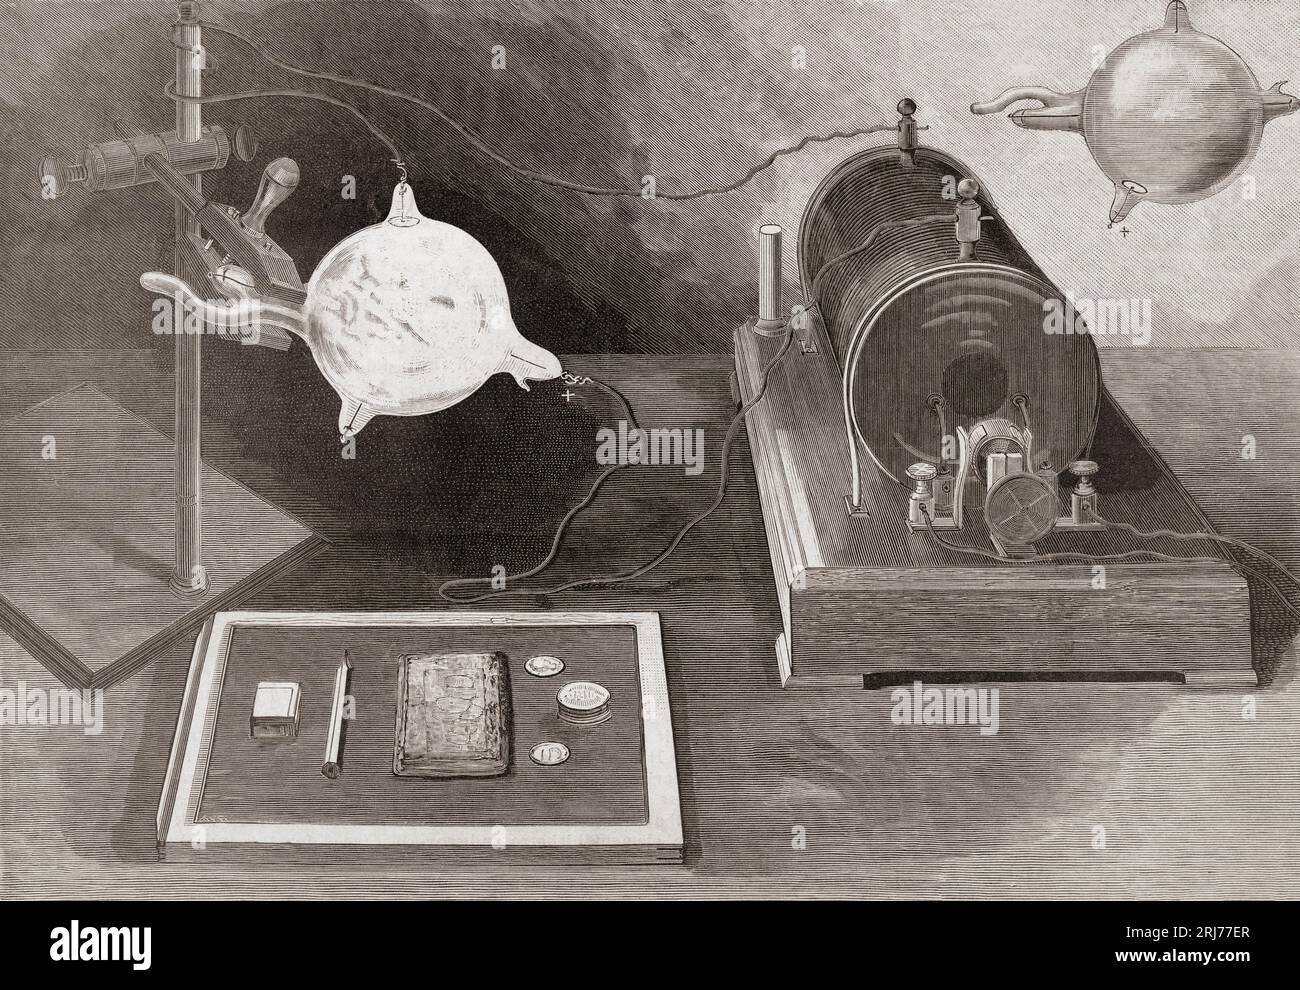 Mise en place pour la photographie de Röntgen, conçue en 1896 par le physicien américain Arthur Williams Wright, 1836 - 1915. Wright a produit un Röntgen, ou photographie aux rayons X, juste un mois après que le scientifique allemand Wilhelm Conrad Röntgen, 1845 - 1923, a décrit les phénomènes de longueur d'onde, une réalisation qui lui a valu le prix Nobel de physique. Banque D'Images